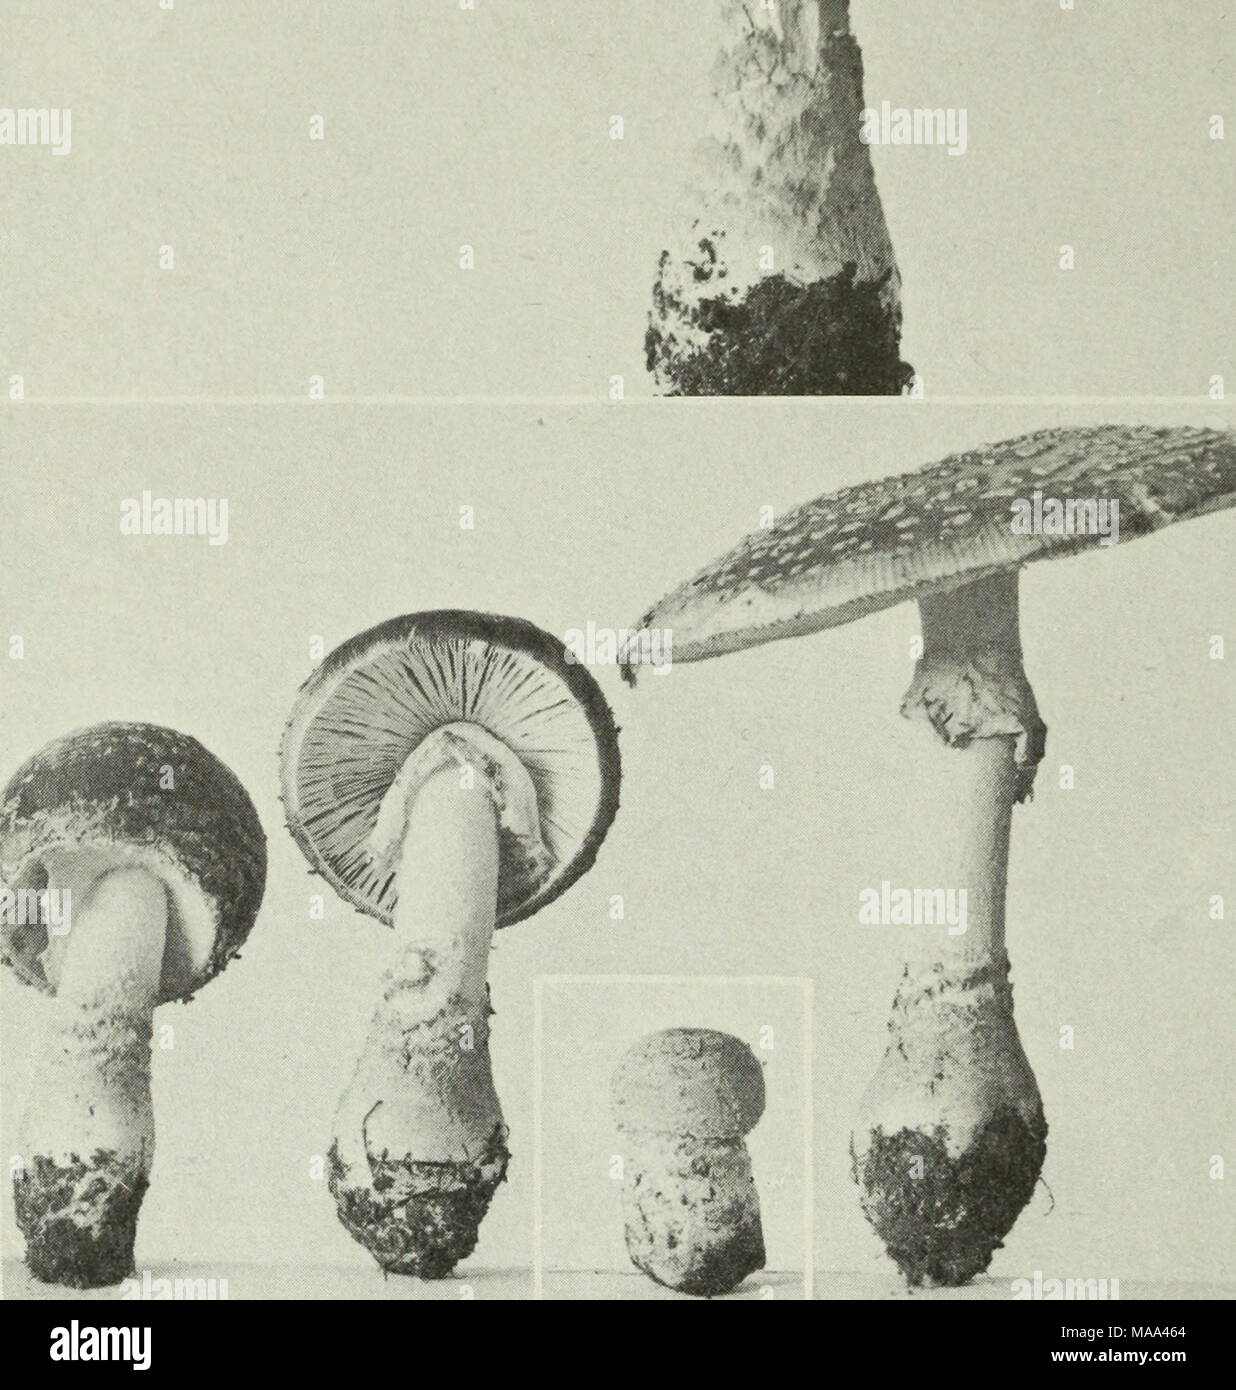 . Edible and poisonous mushrooms of Canada . 104 Figures 103-104. Amanita muscaria. 103, mature plant, note volva adhering to base of stipe in irregular rings and patches; 104, series of specimens illustrating the tearing of the volva to leave patches on the pileus and base of the stipe, and the tearing of the partial veil to form the annulus. 105. Russula abietina. 107. R. chamaeleontina. 109. R. Integra. 111. R. xerampelina. 113. Tricholoma pessundatum. Figures 105-114 106. 108. 110. 112. 114. aeruginea. decolorans. R. R. R. mariae. Pleurotus serotinus. Marasmius siccus. 50 Stock Photo